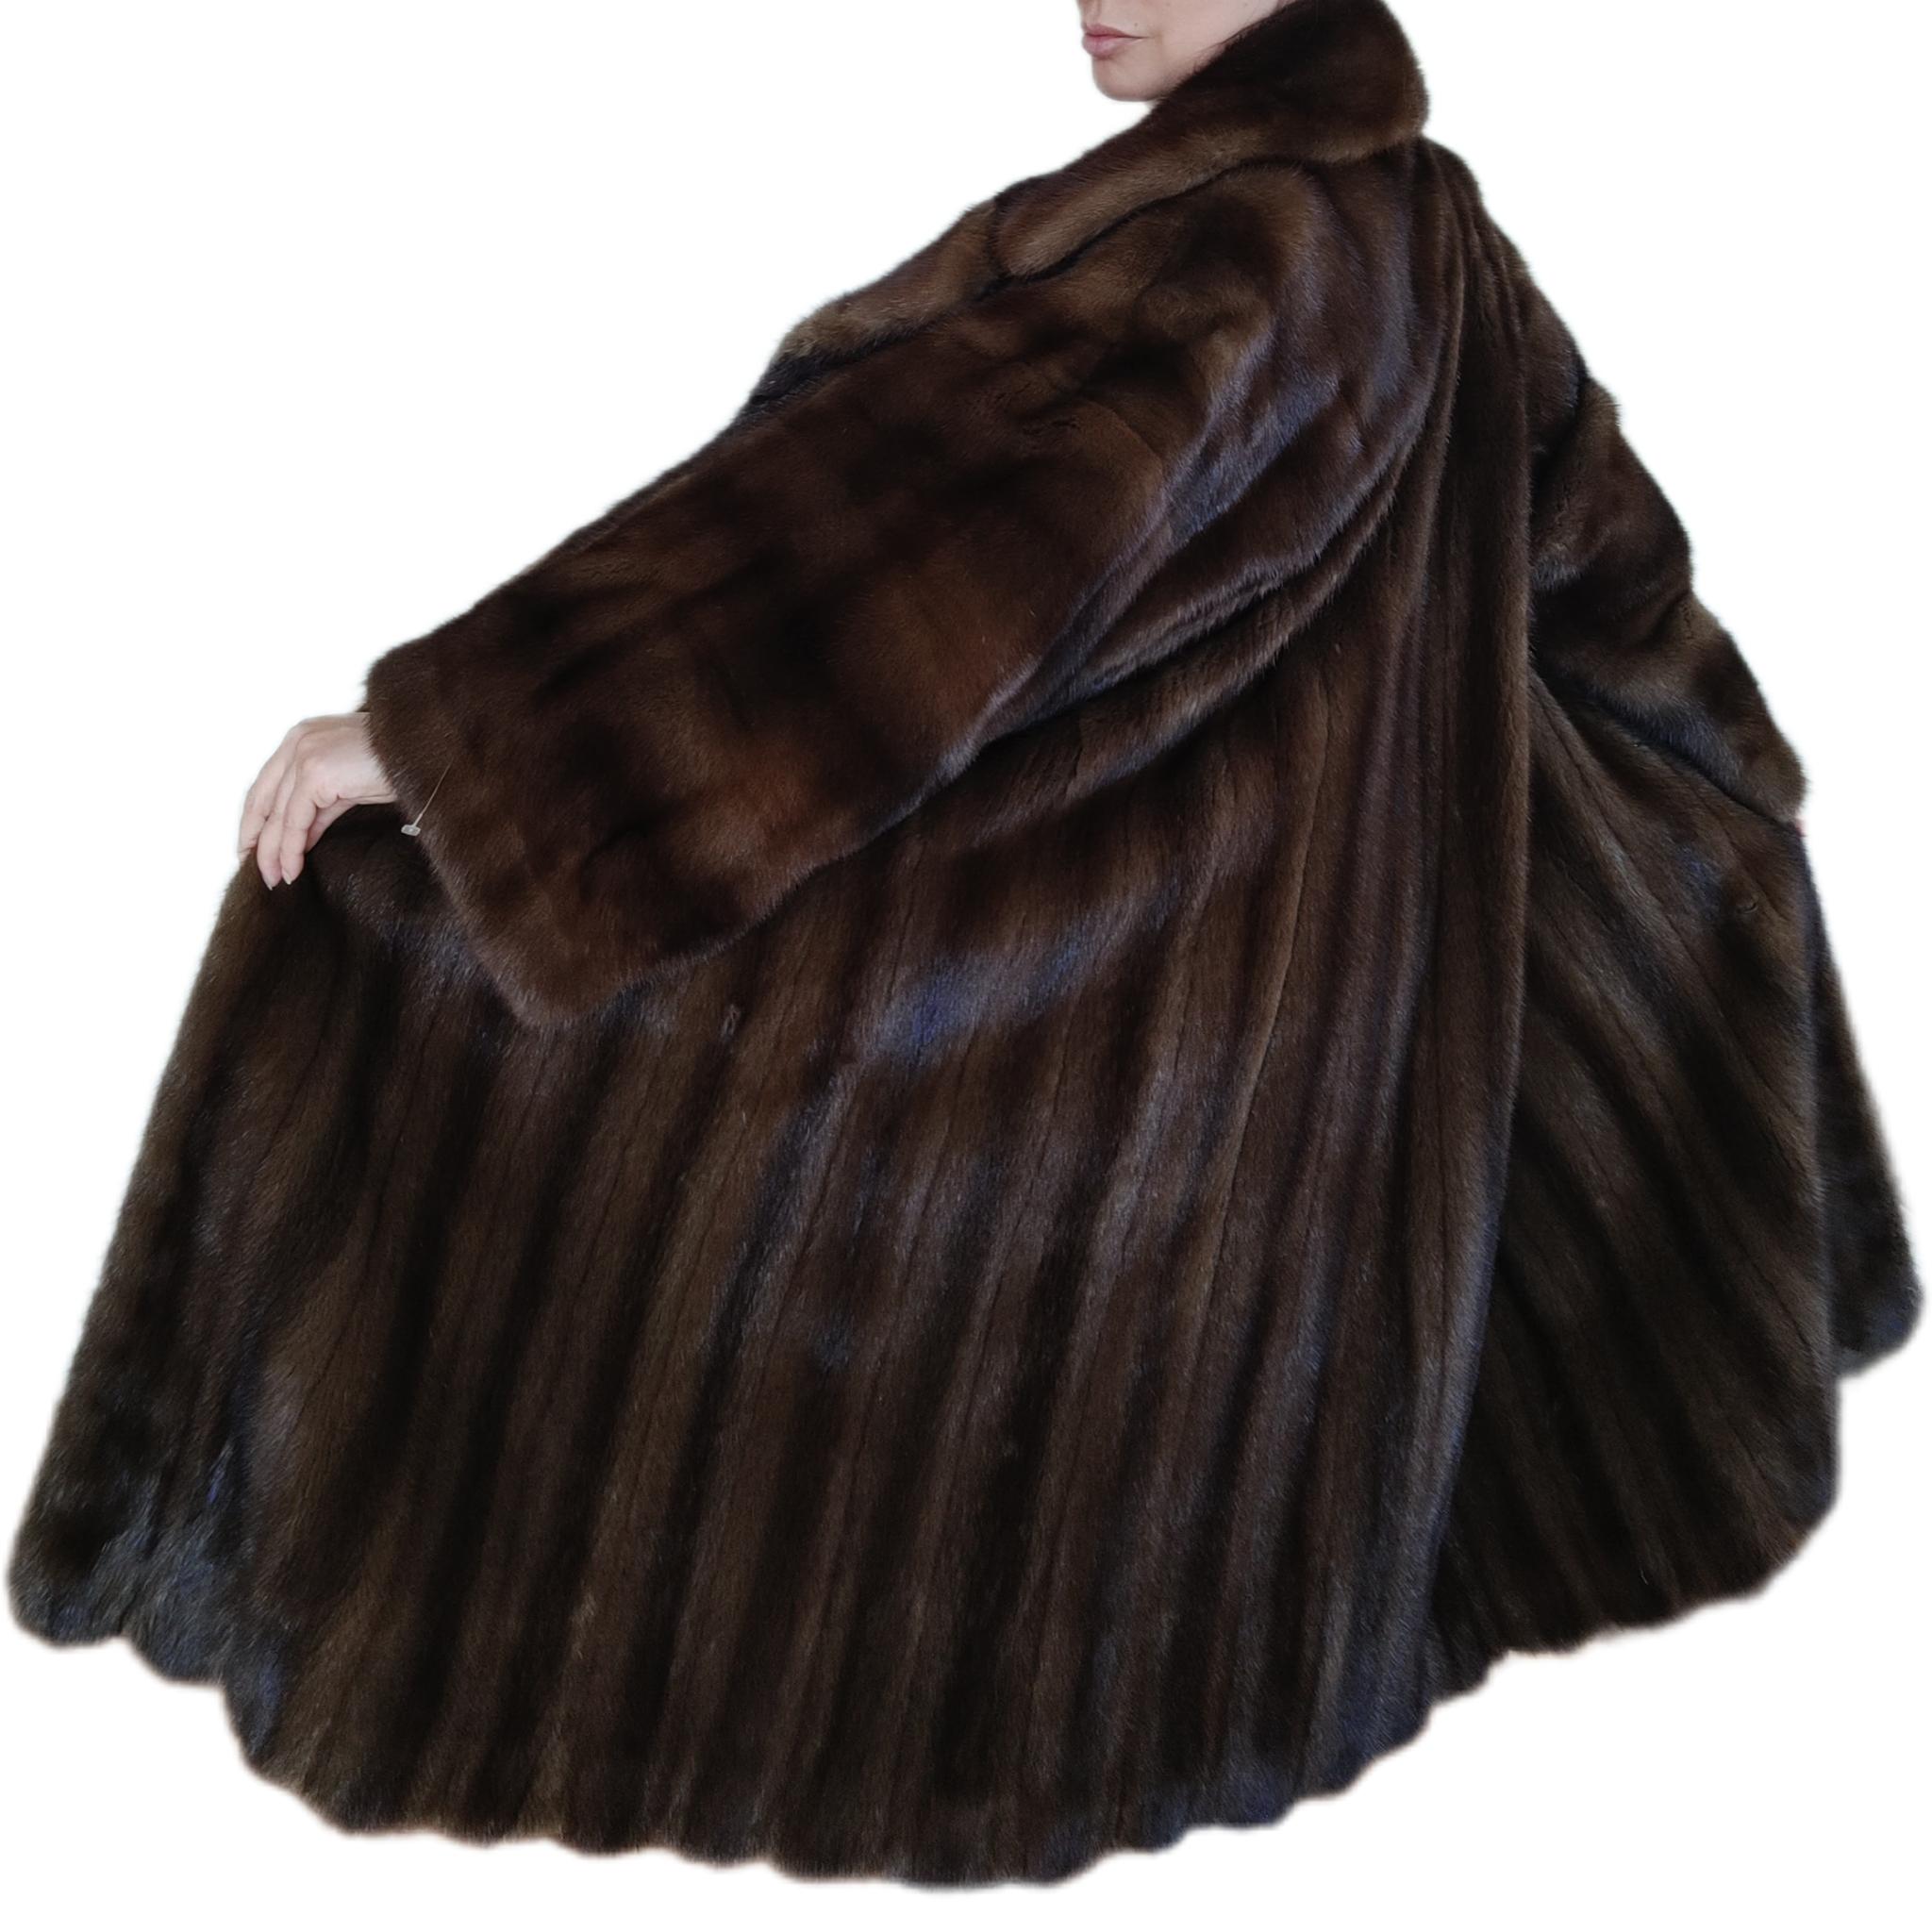 Christian dior mink fur coat size 18 For Sale 6